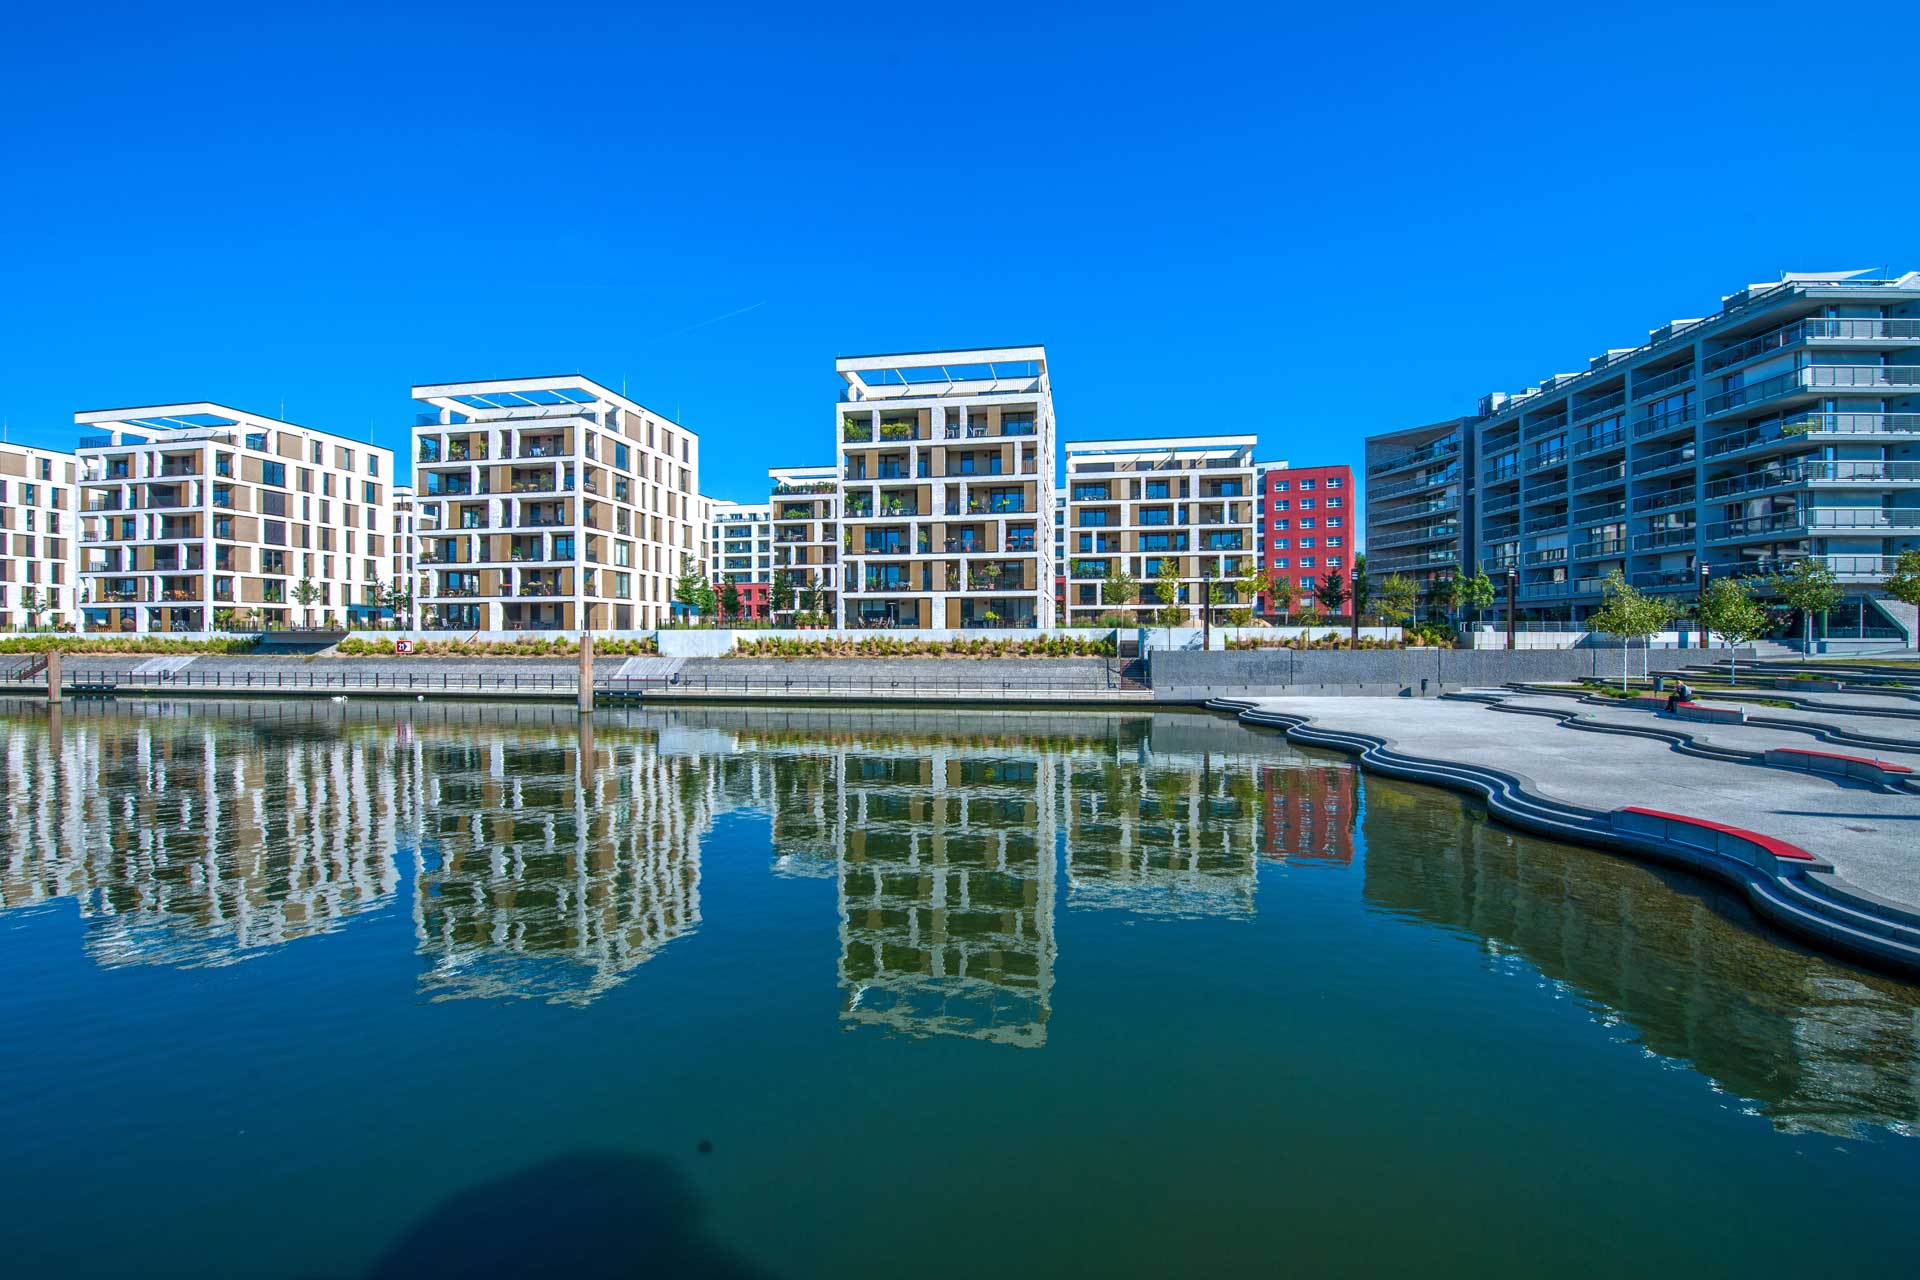 Eine moderne städtische Uferentwicklung mit mehreren weißen Gebäuden, Balkonen und roten Akzenten, die sich im ruhigen Wasser eines angrenzenden Flusses oder Kanals unter einem klaren blauen Himmel spiegeln.